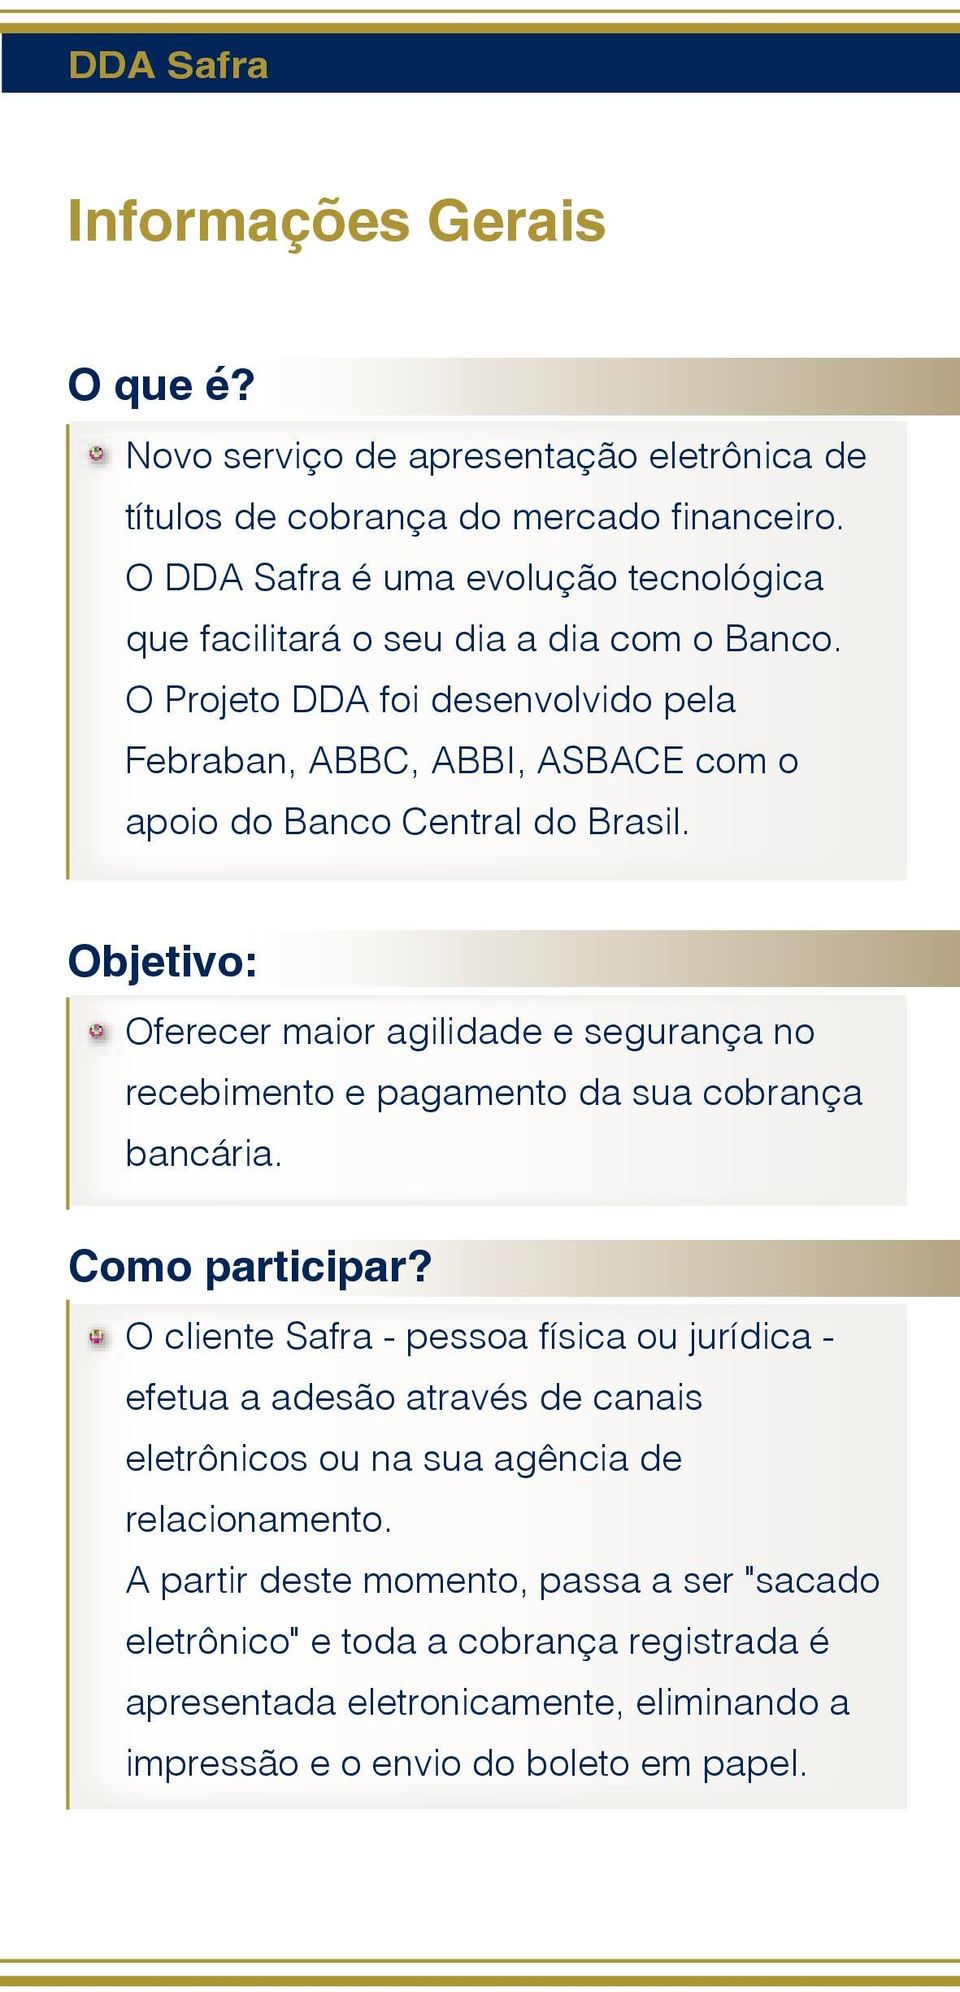 O Projeto DDA foi desenvolvido pela Febraban, ABBC, ABBI, ASBACE com o apoio do Banco Central do Brasil.